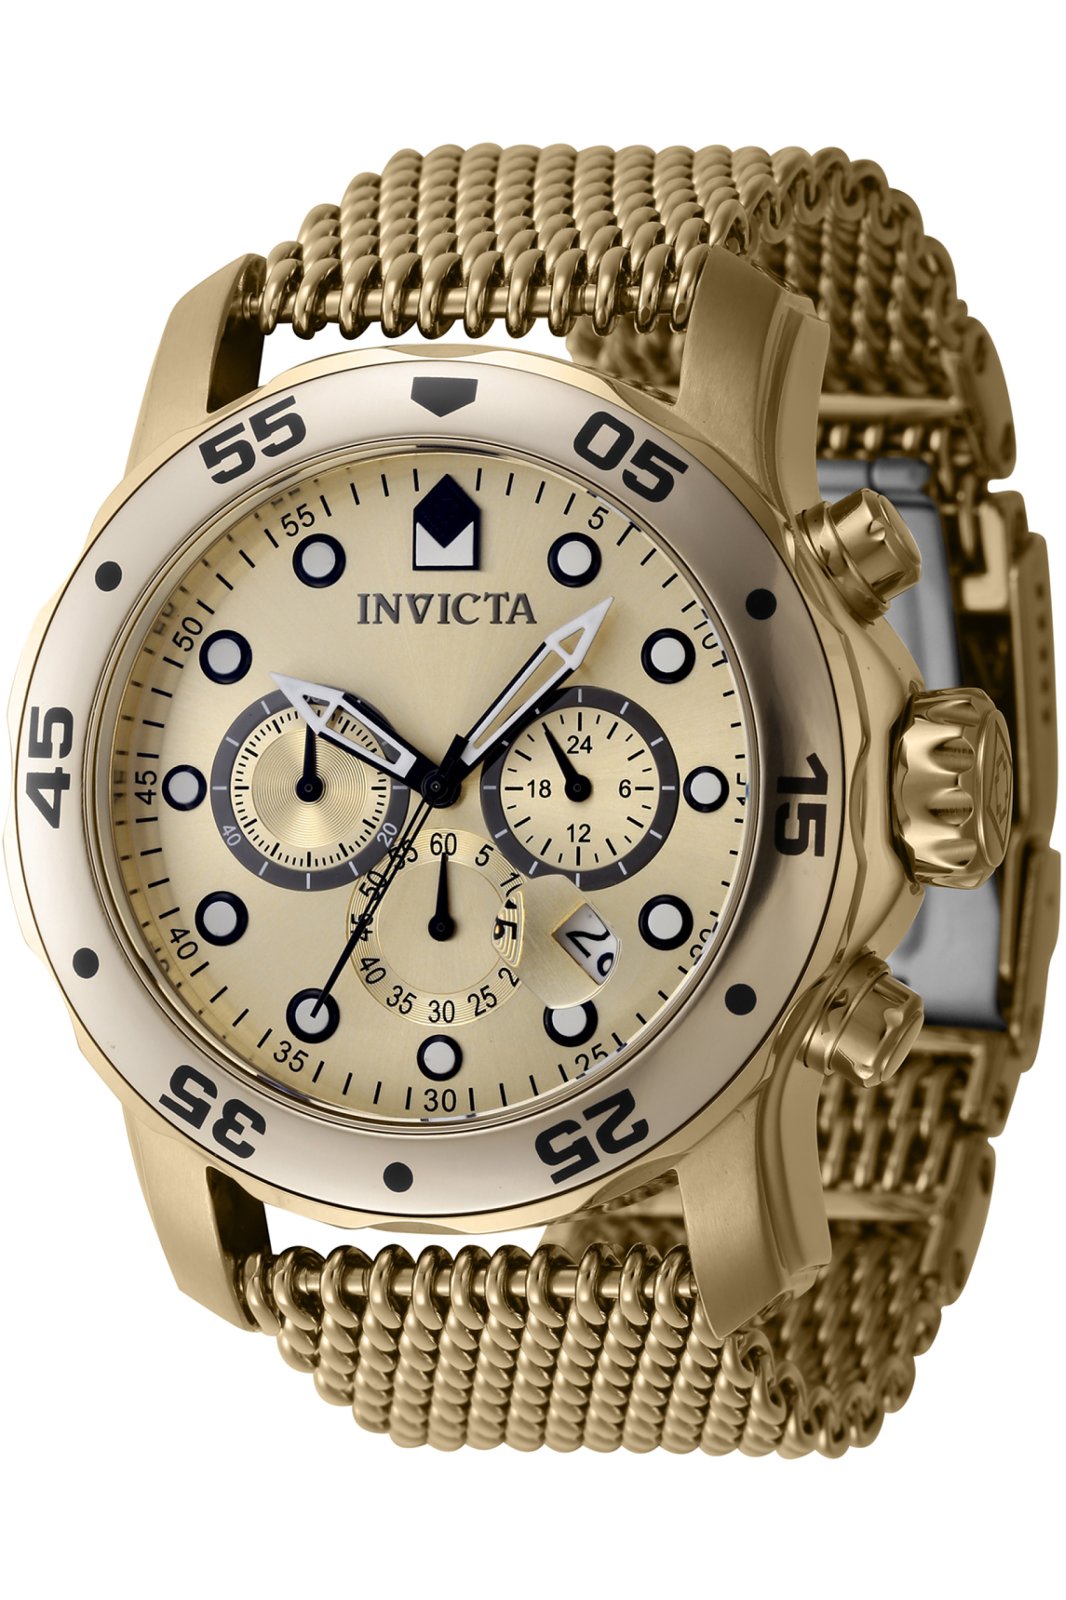 Invicta Pro Diver 47240 Men's Quartz Watch - 48mm